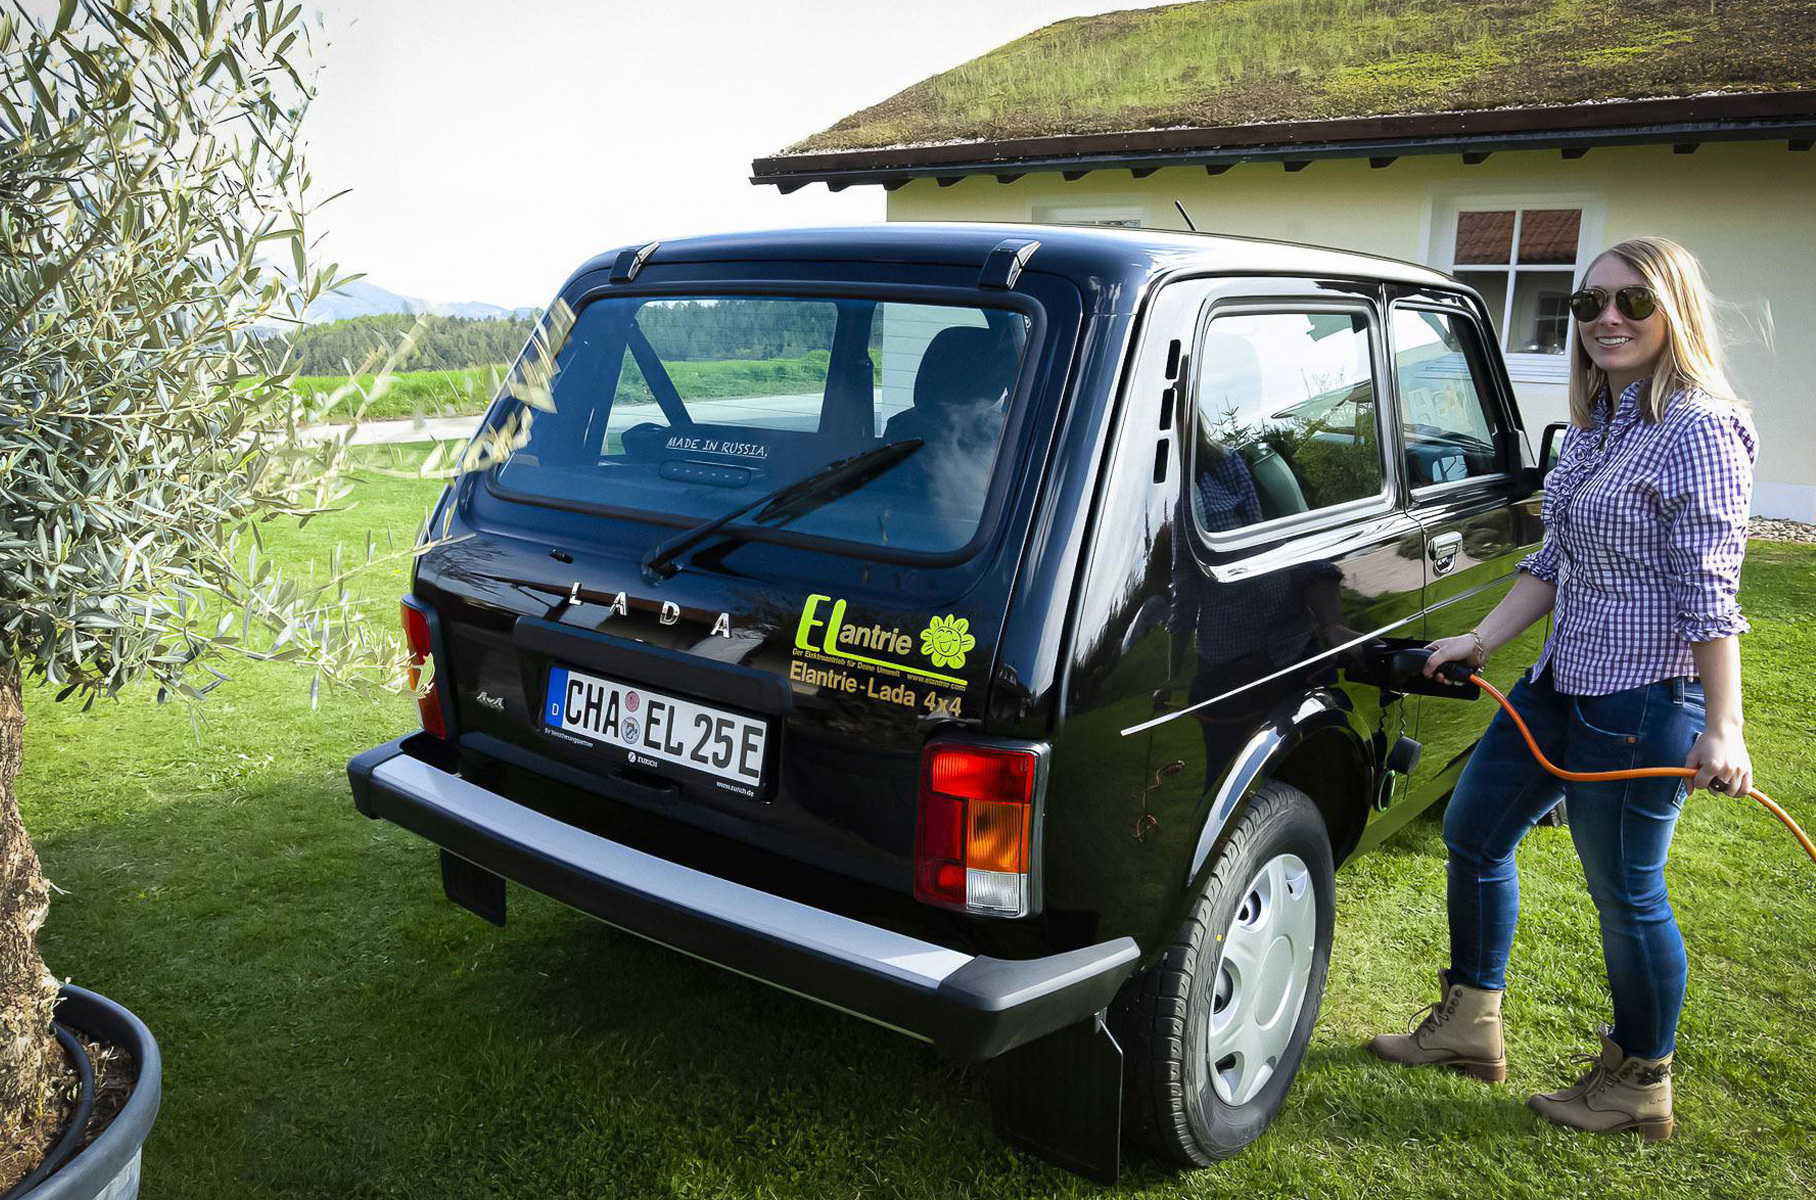 Цена отдельного набора не названа, но такая Lada Niva обойдется в 19 990 евро (более 1,6 миллиона рублей).